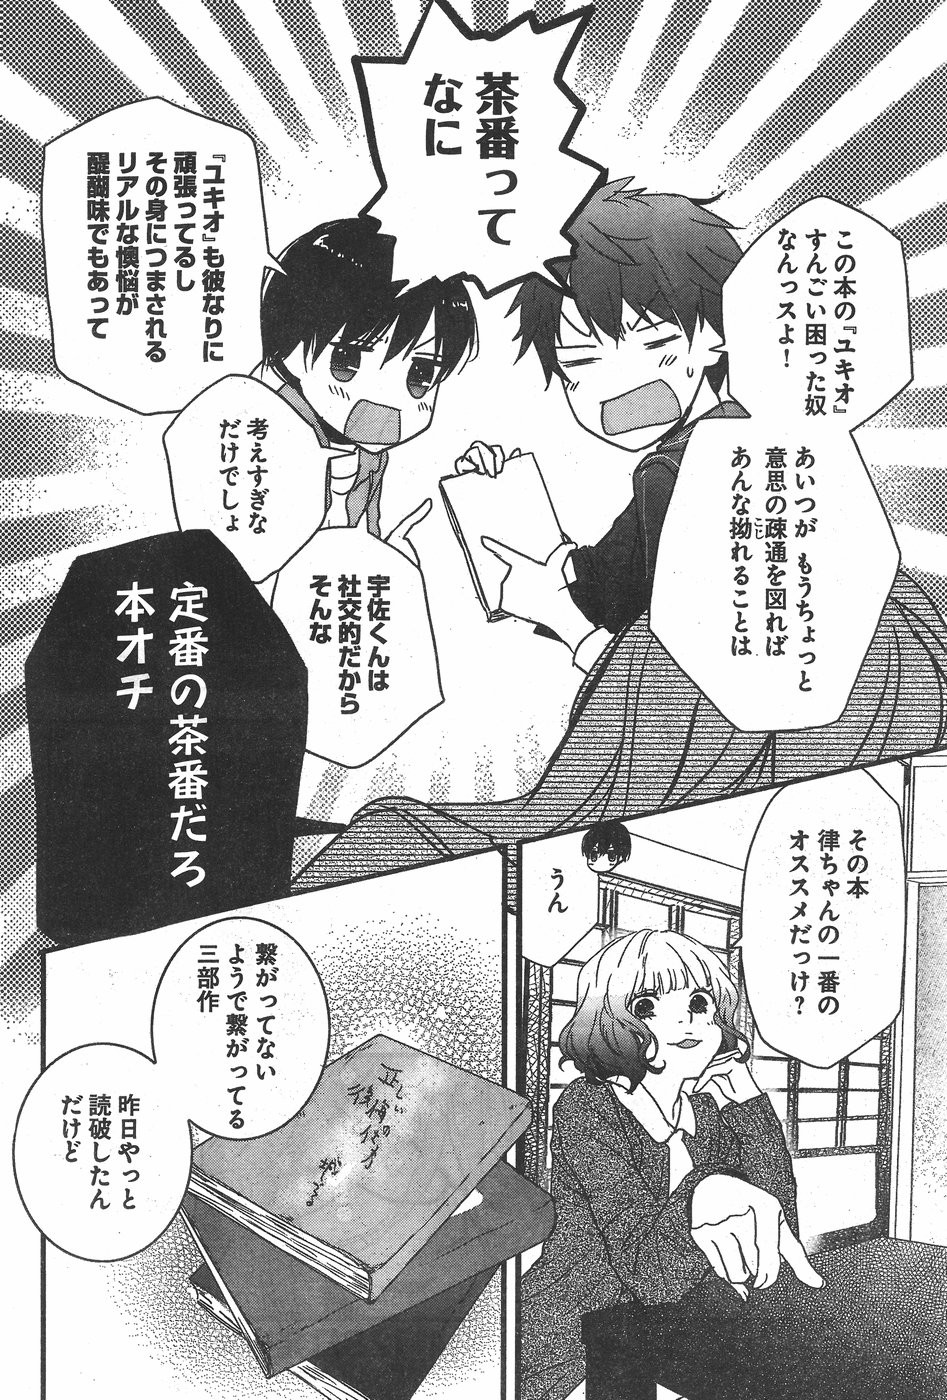 Bokura wa Minna Kawaisou - Chapter 81 - Page 2